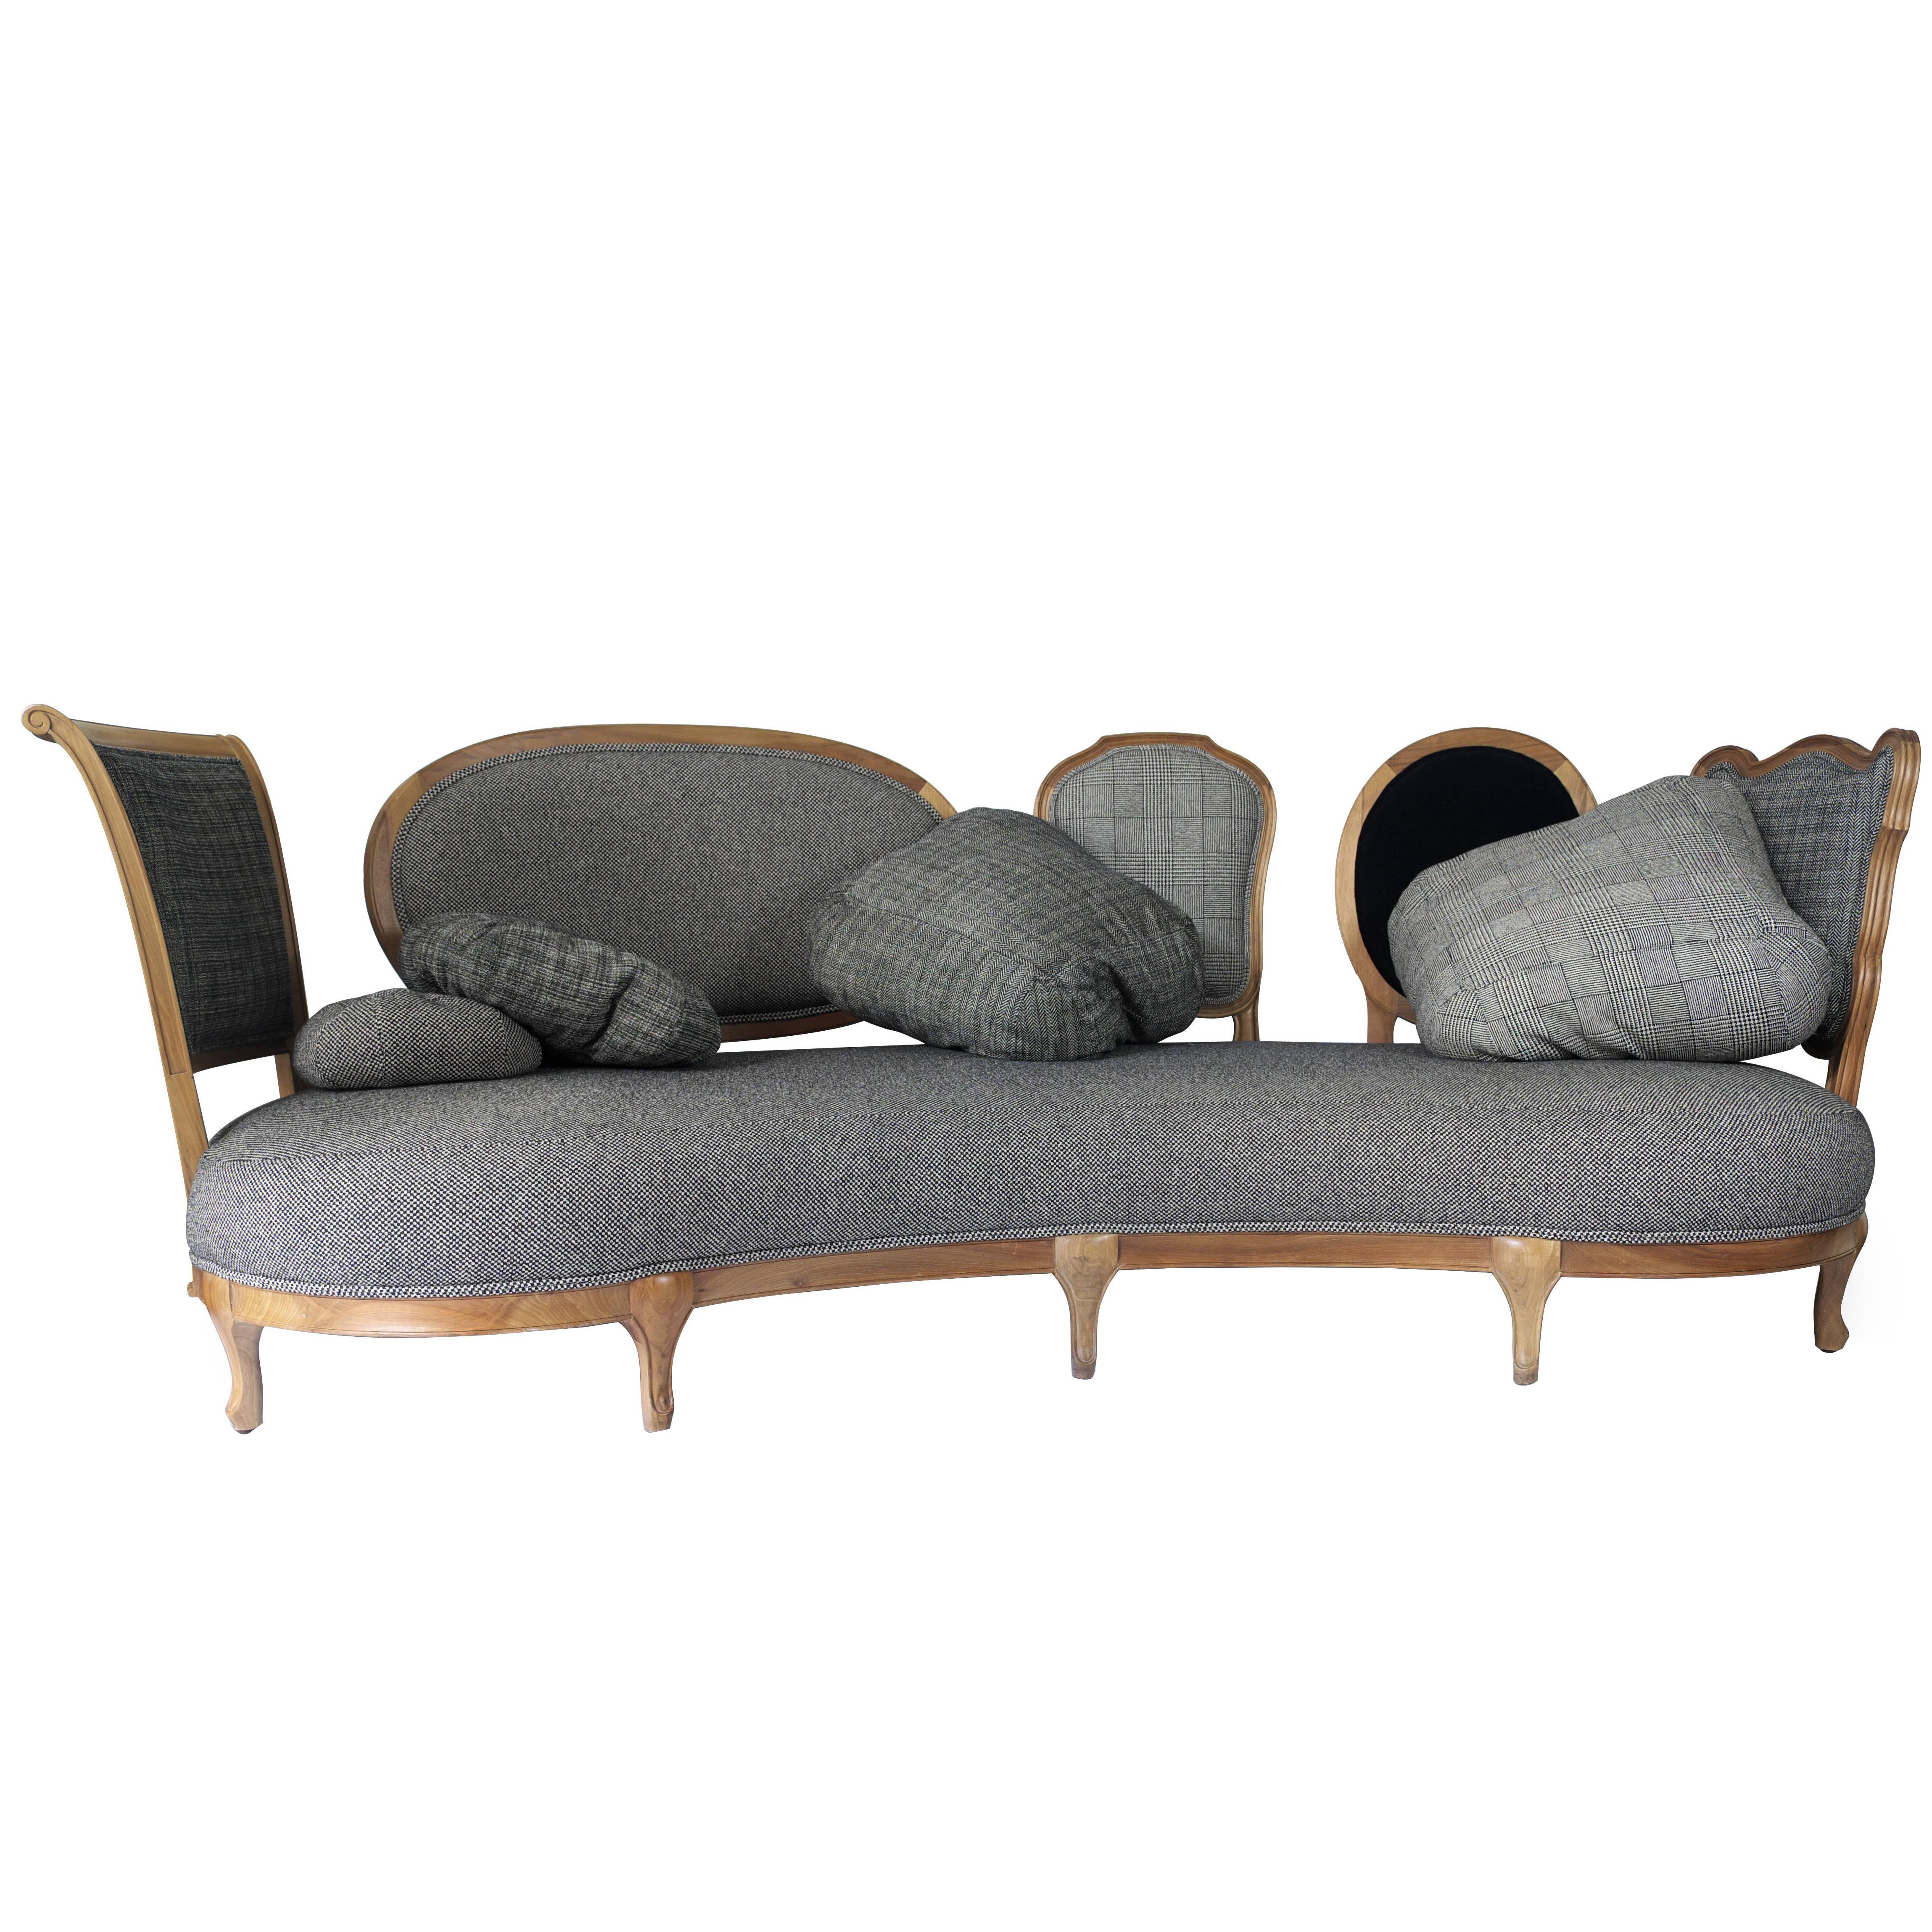 Back to Back – modernes Sofa aus Nussbaumholz, entworfen von Nigel Coates